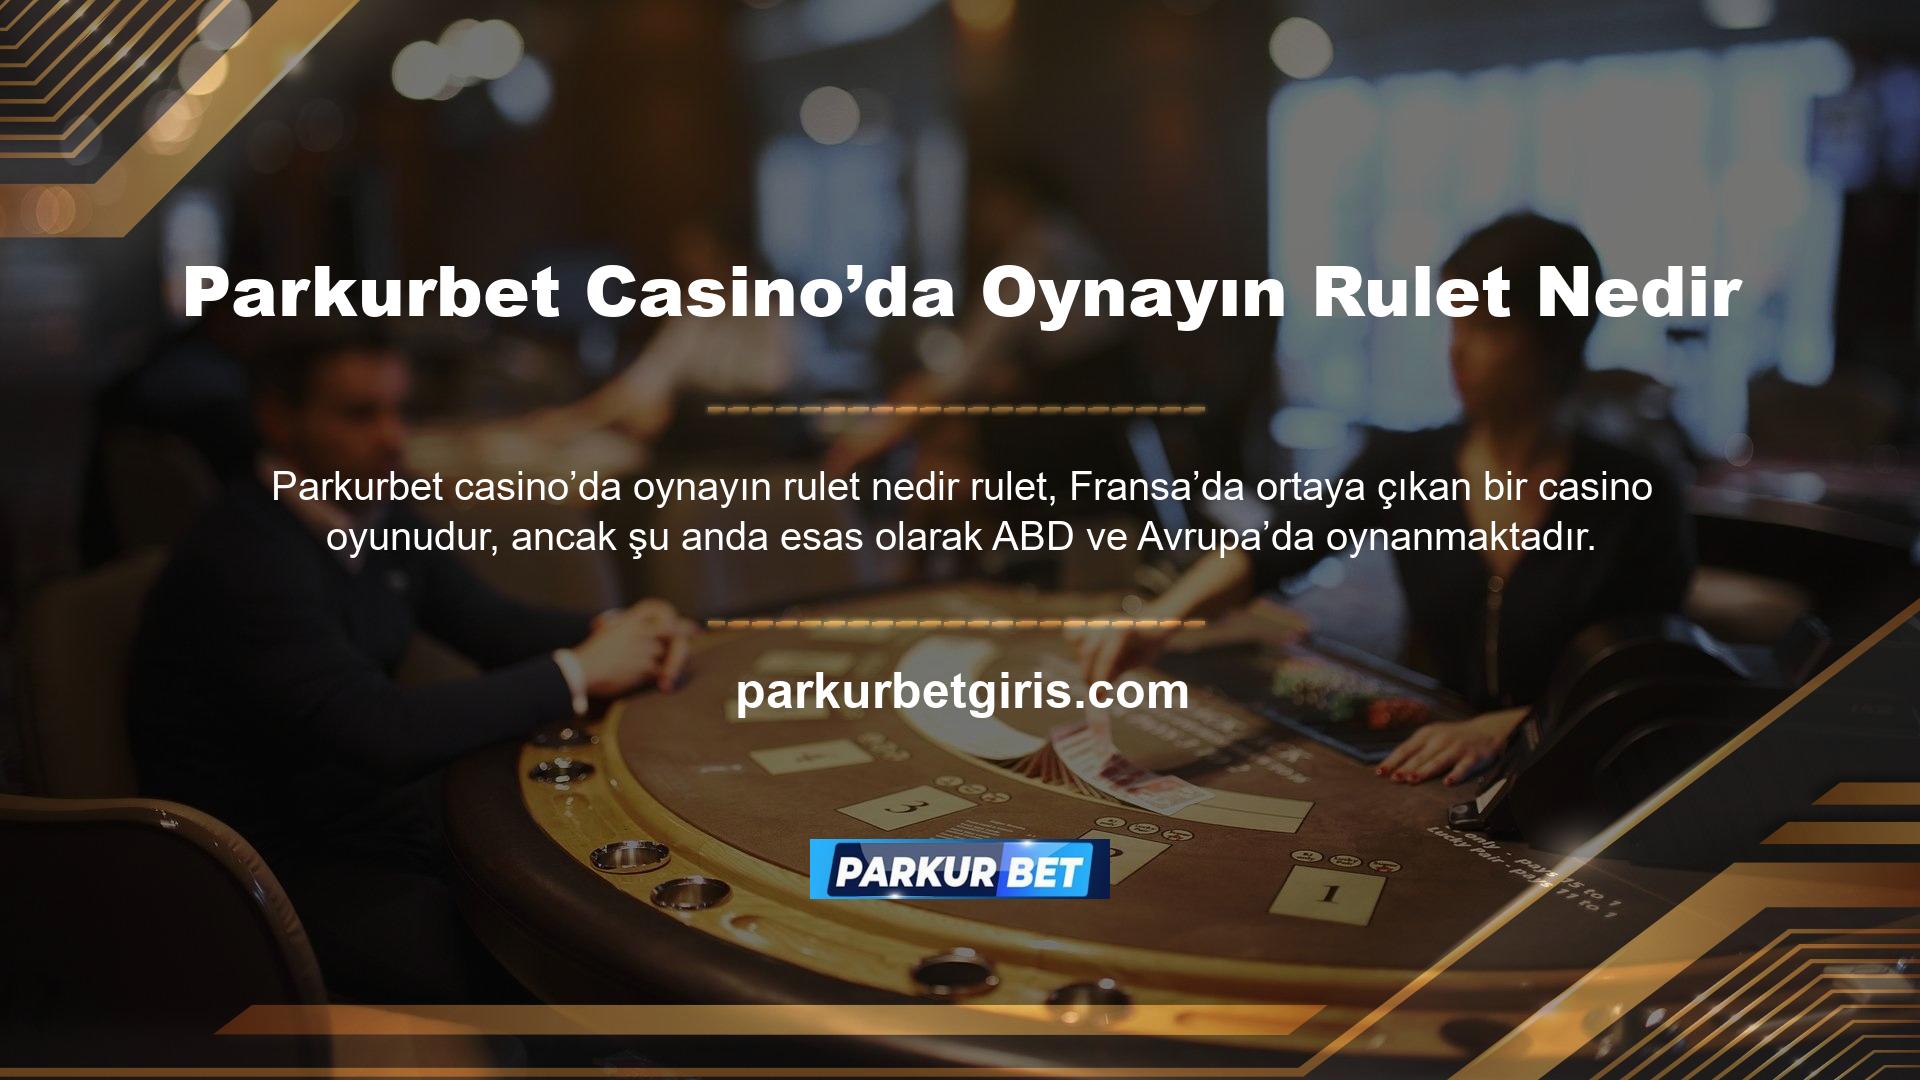 Temel olarak, tüm casino oyunlarının mantığı, oran oranlarını korumak veya belirli tahminler yapmaktır